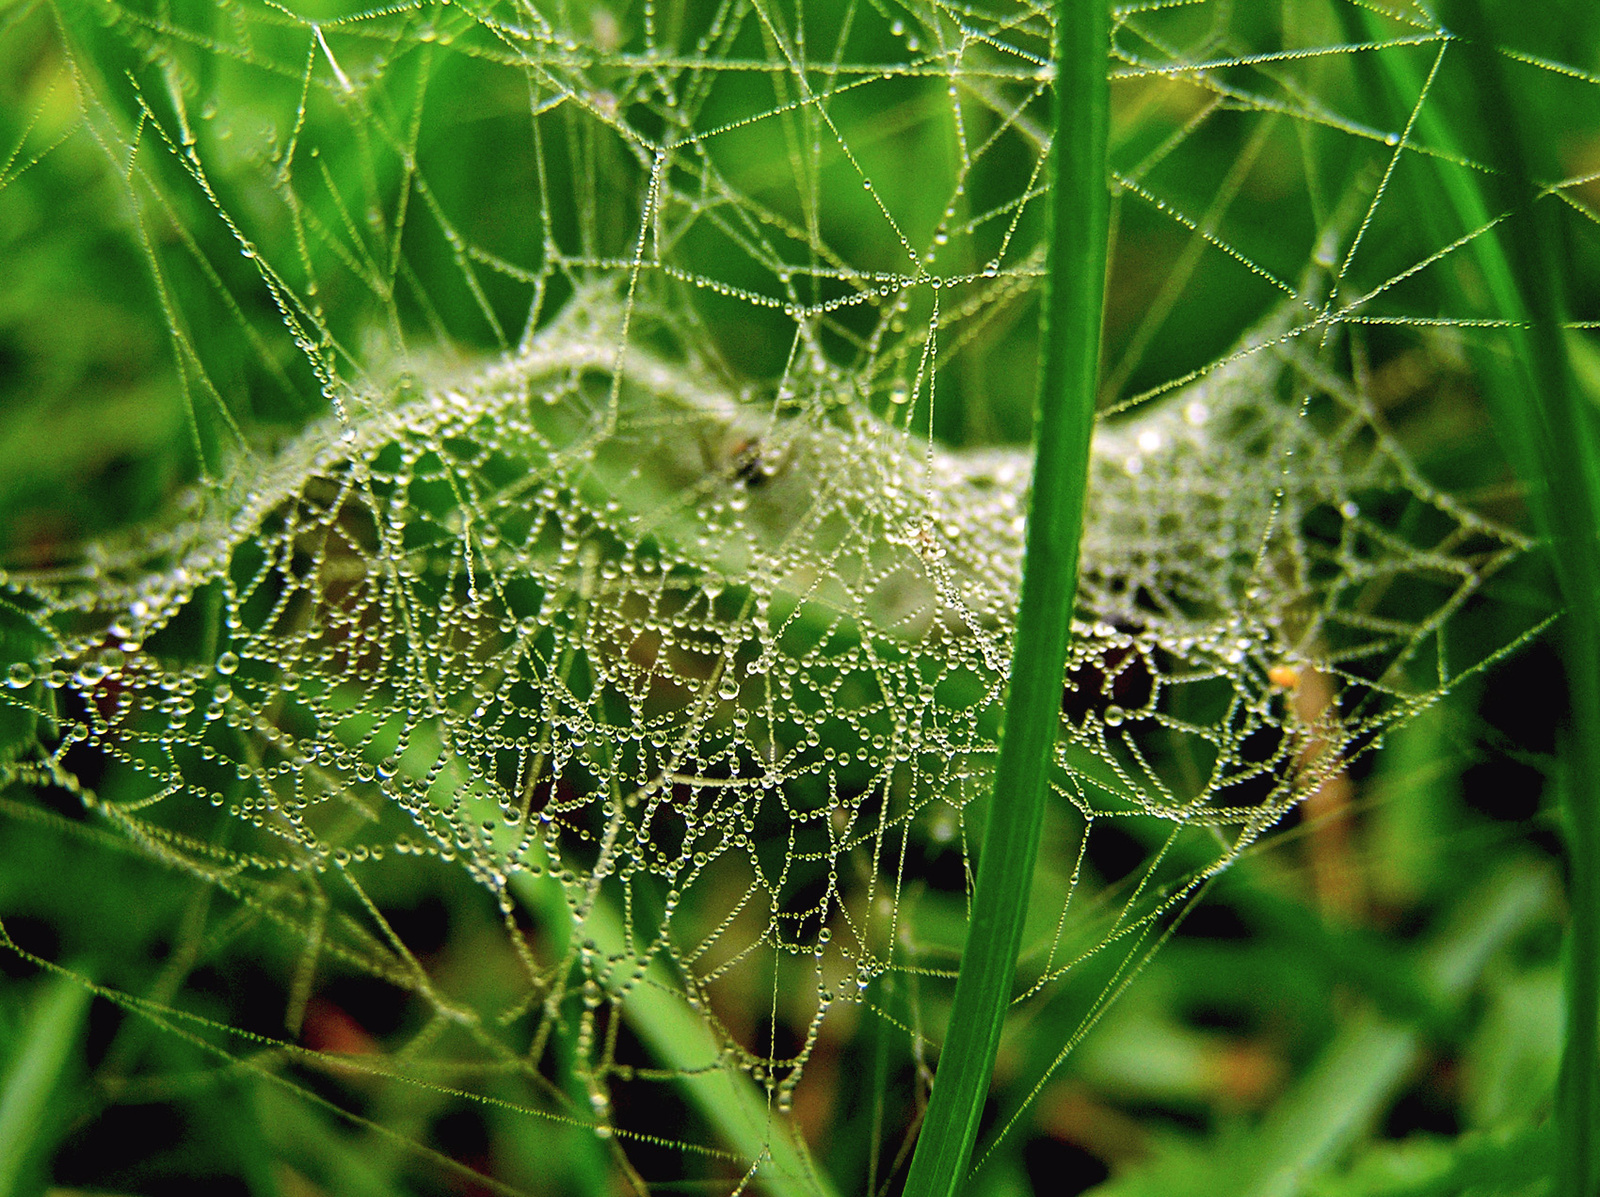 őszi harmatos pókháló a fűben